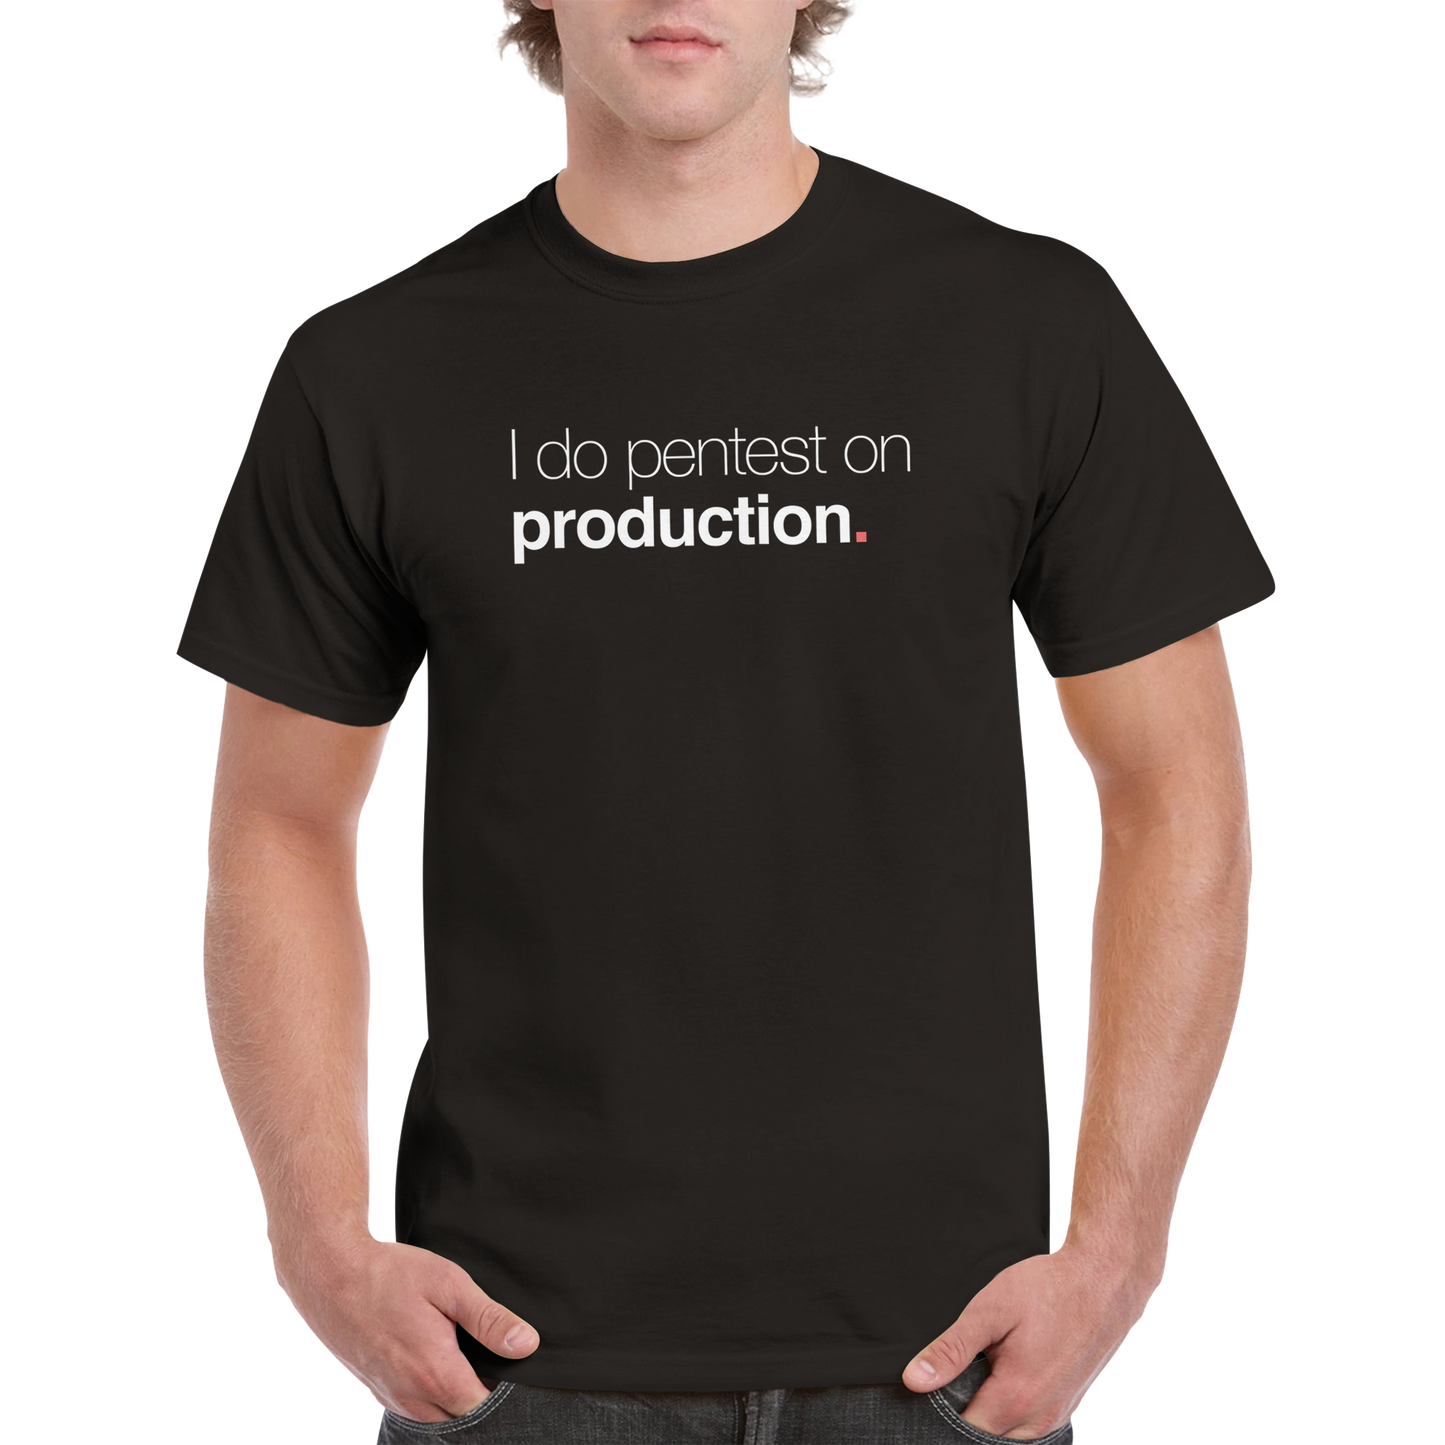 Ich teste die Produktion des Unisex-T-Shirts 